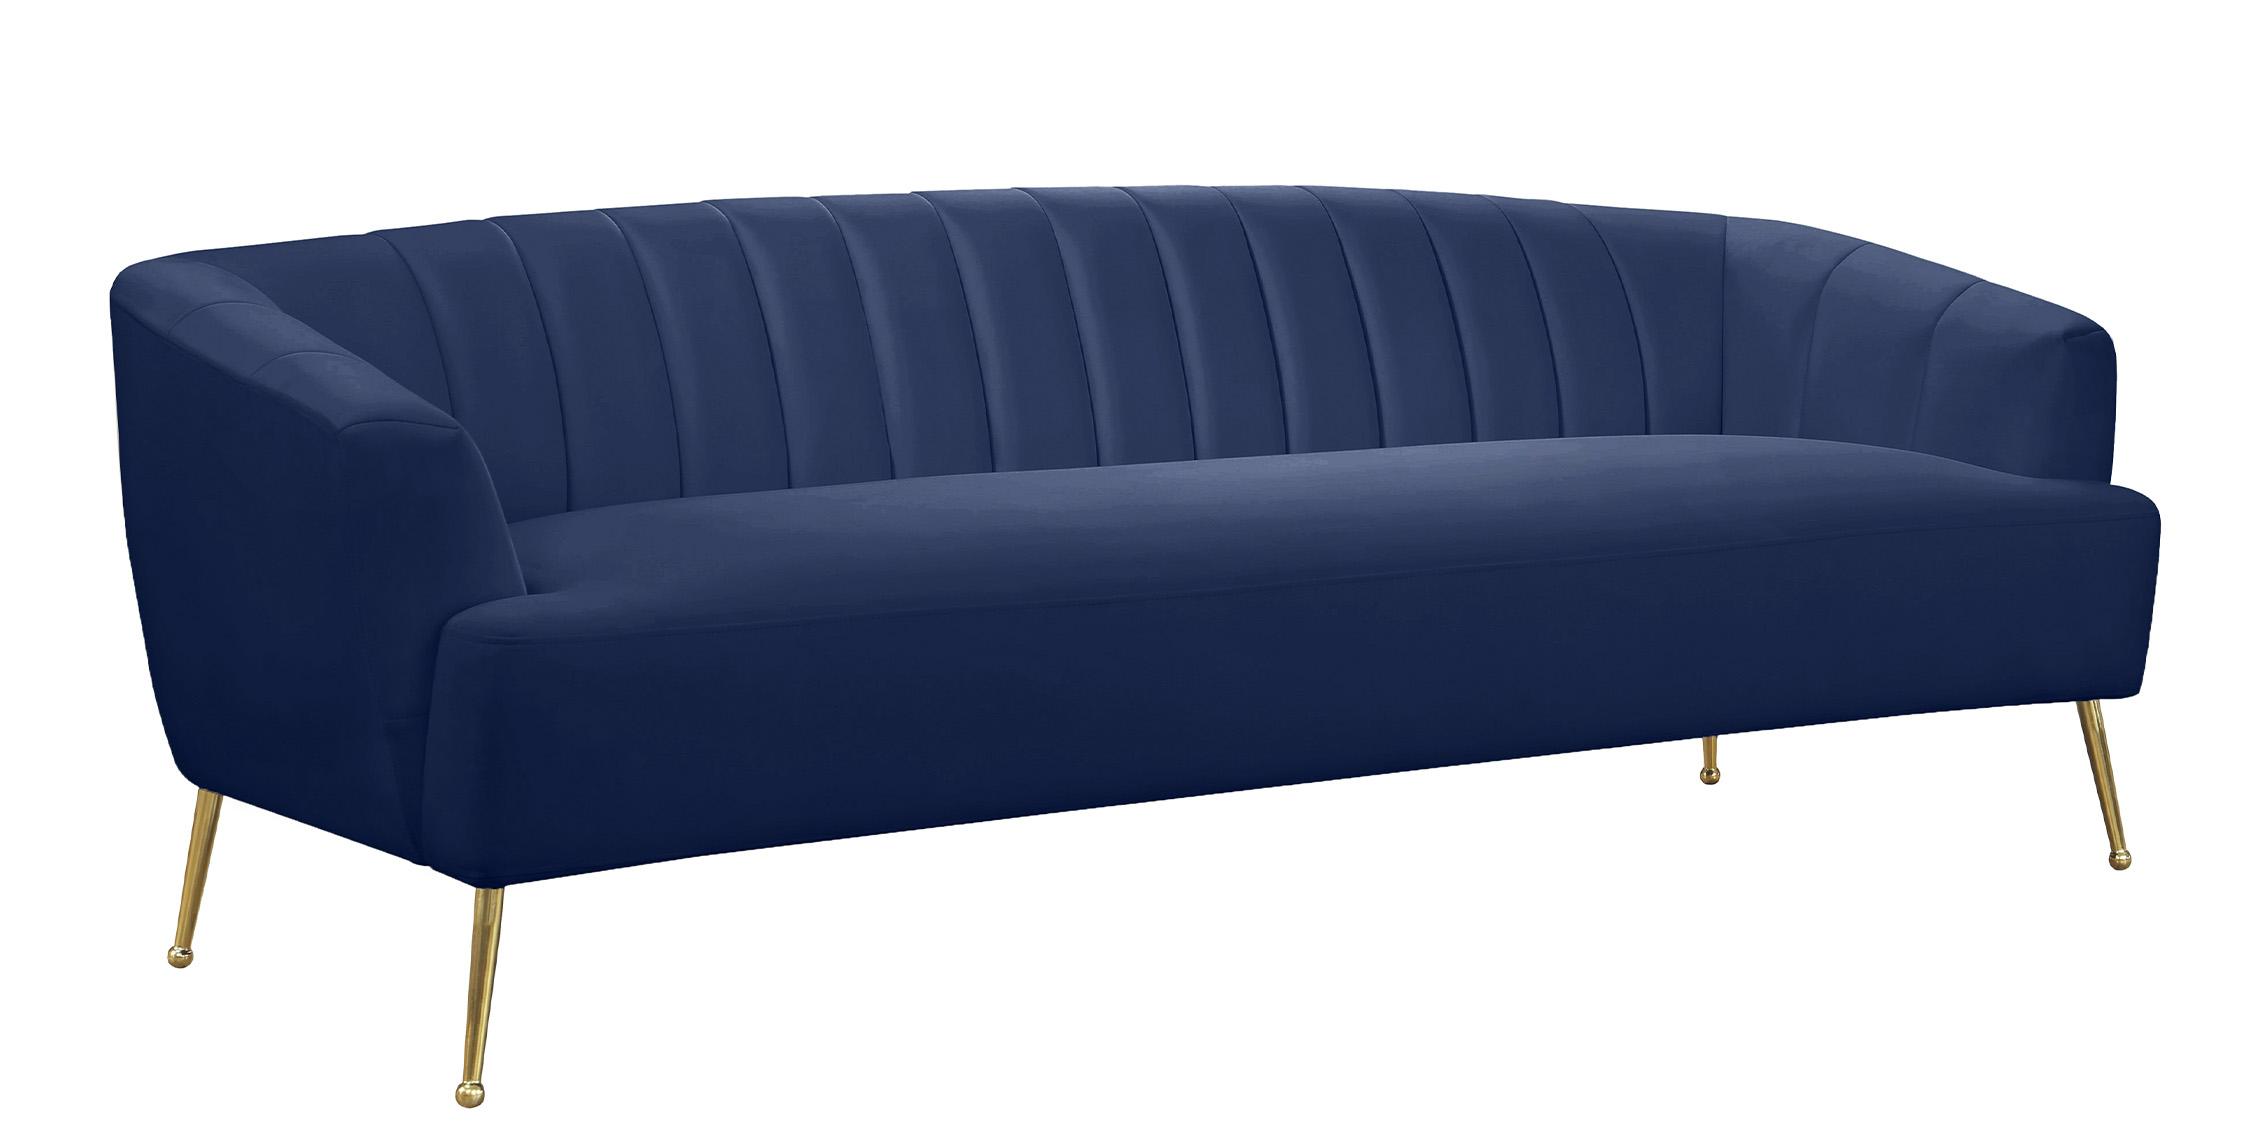 Classic Sofa TORI 657Navy-S 657Navy-S in Navy blue Velvet